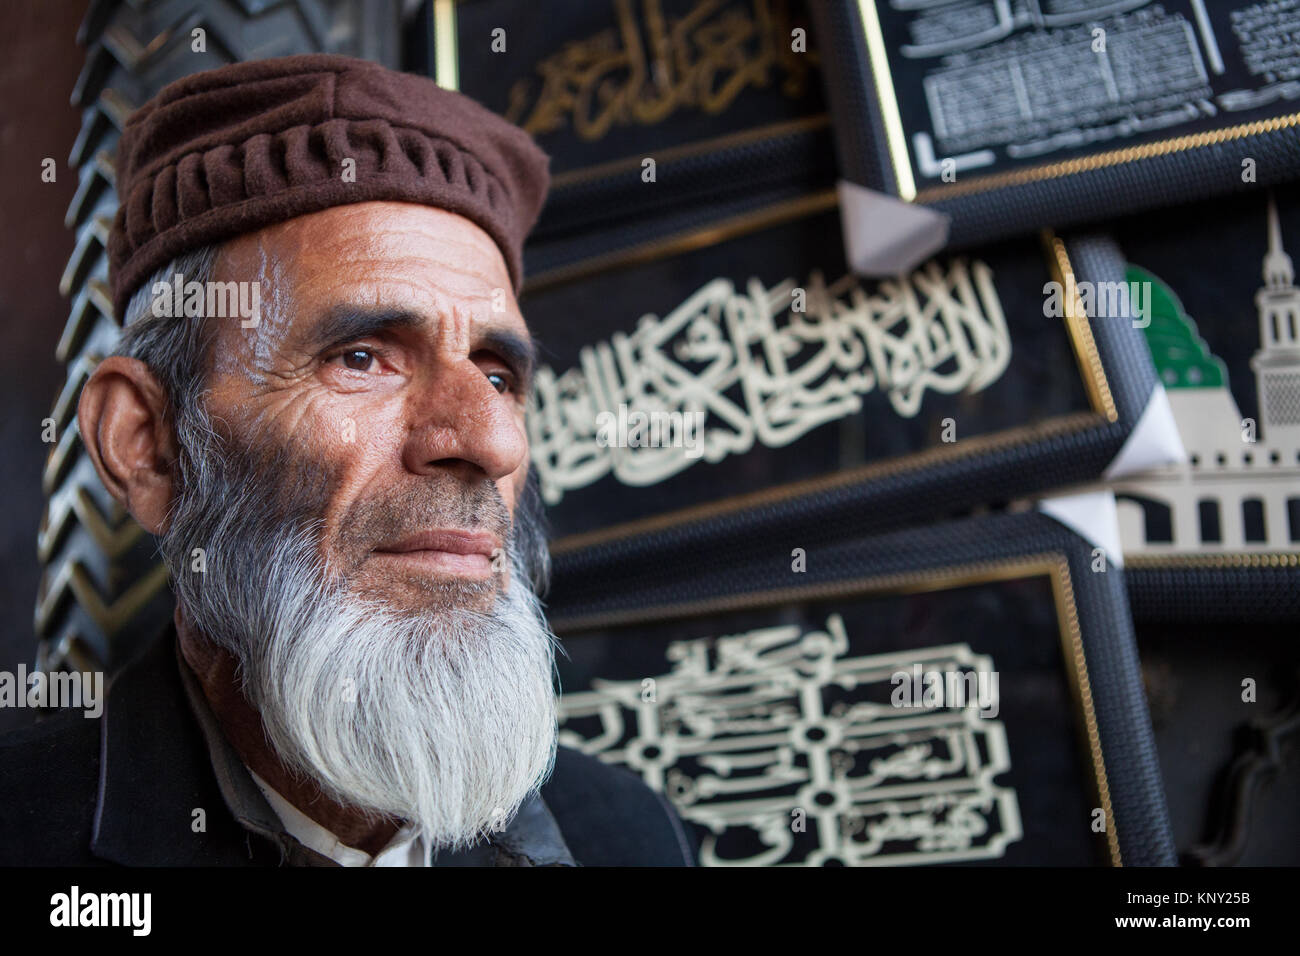 Portrait d'un homme musulman sous le bandeau d'une passerelle pour la Jama Masjid dans la vieille ville de Delhi, Inde Banque D'Images